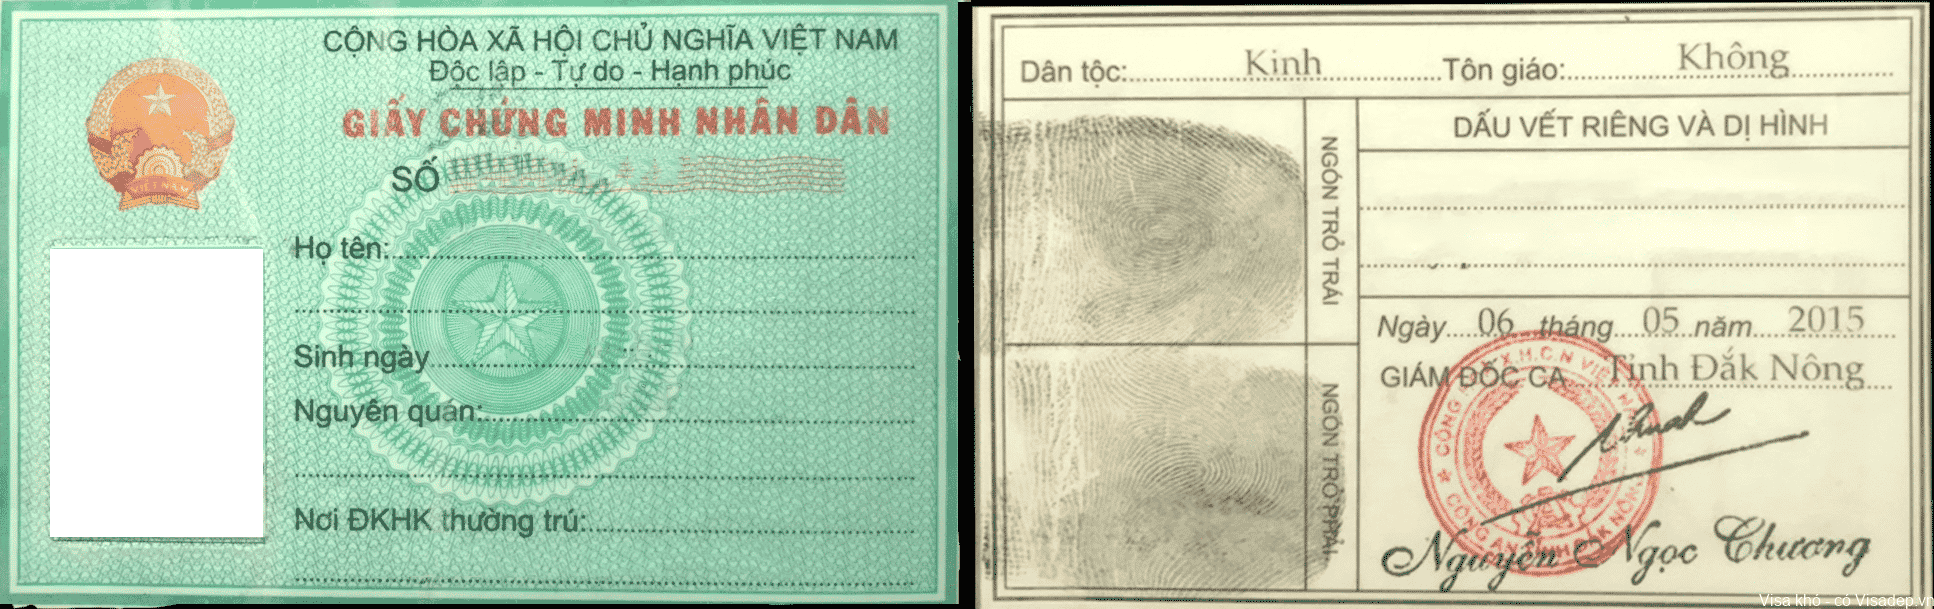 Giấy chứng Minh si quan 1968